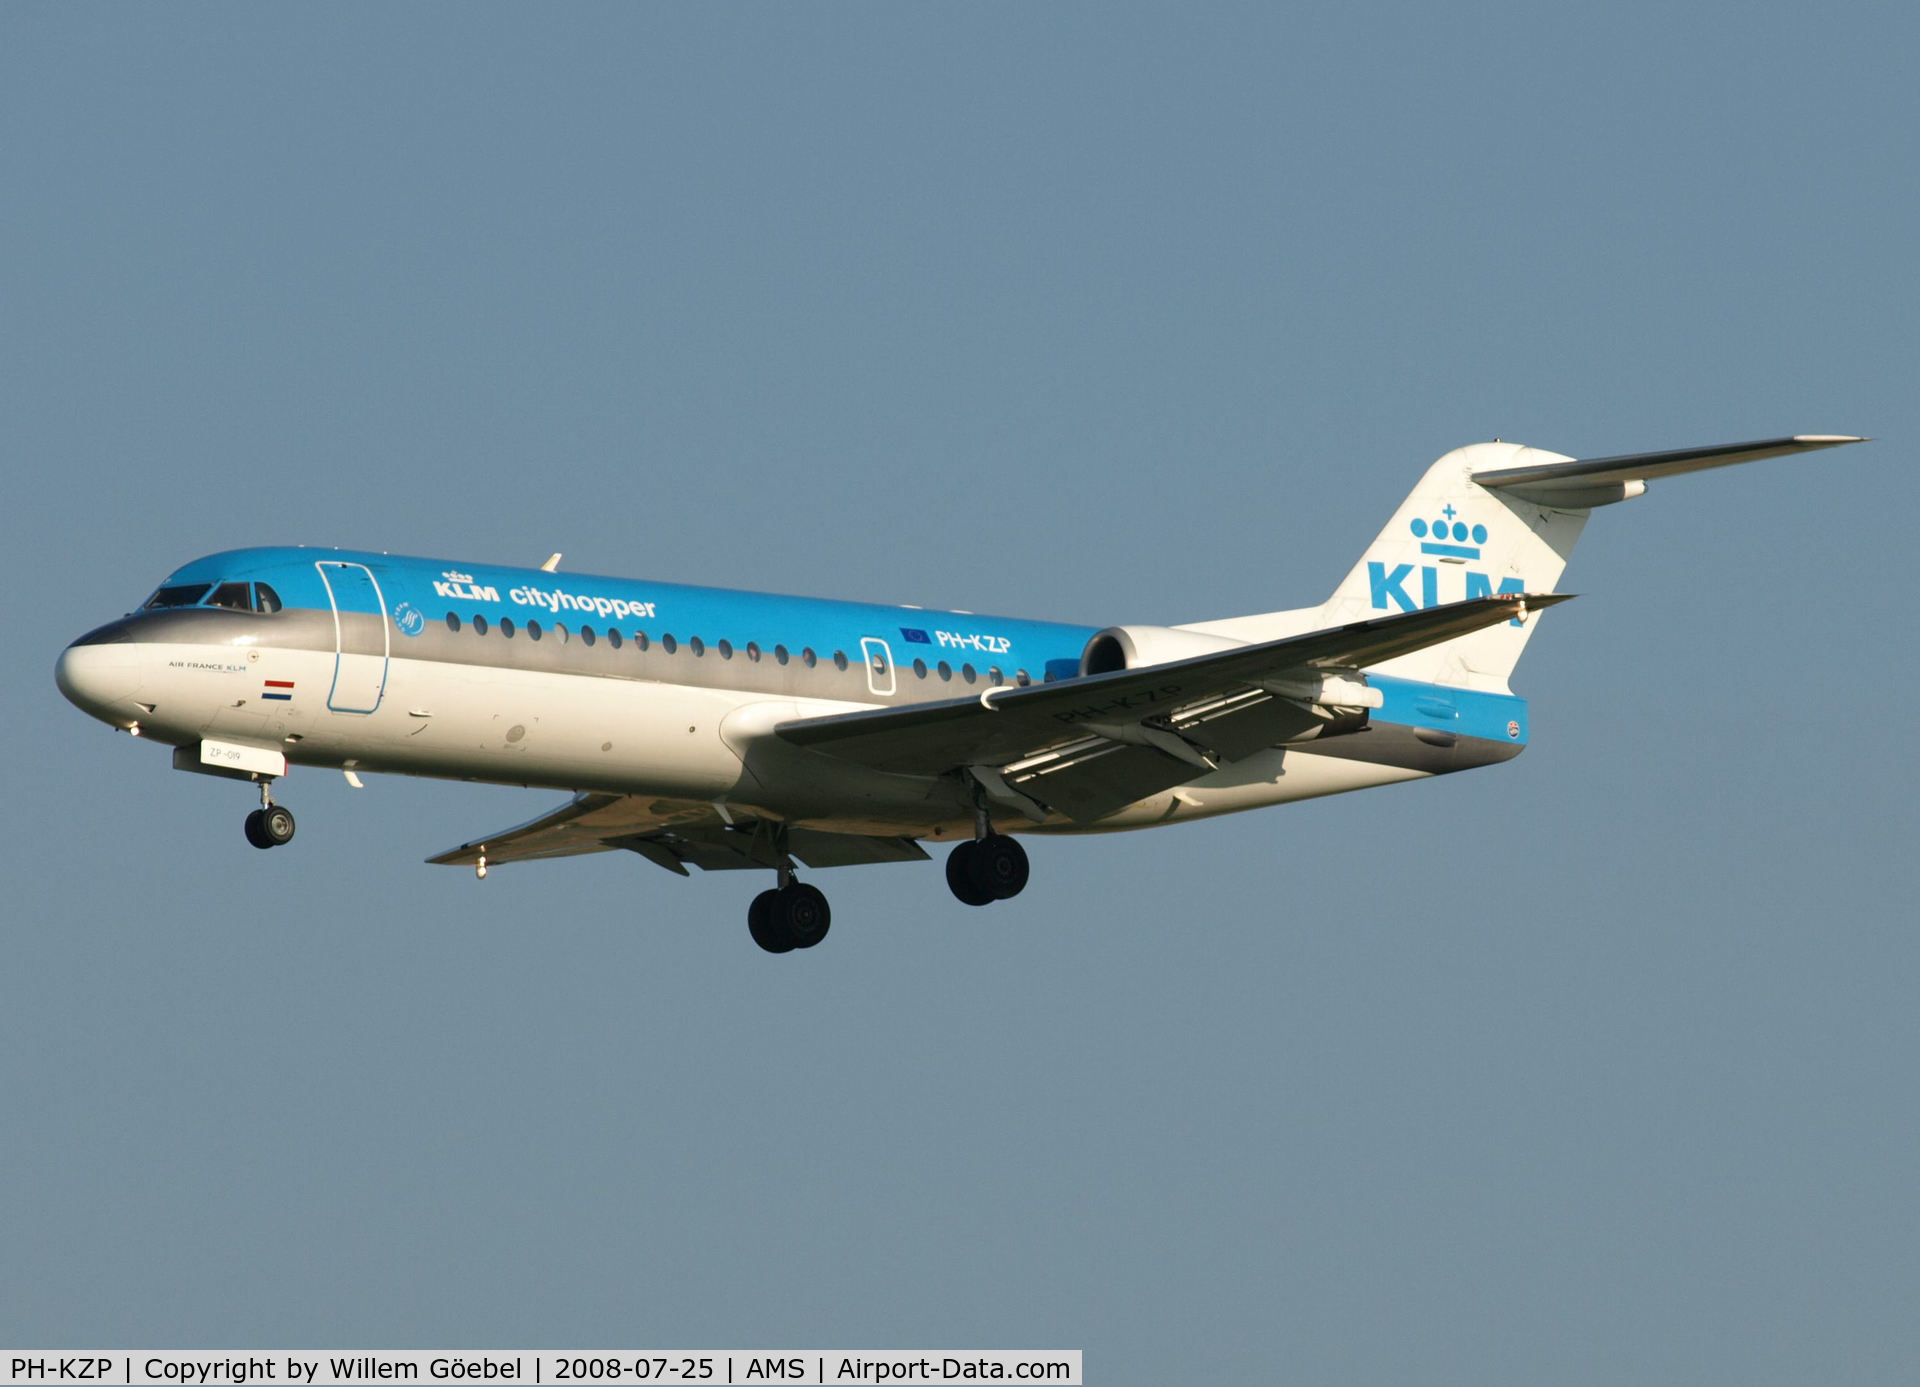 PH-KZP, 1995 Fokker 70 (F-28-0070) C/N 11539, Landing on runway C18 of Schiphol Airport